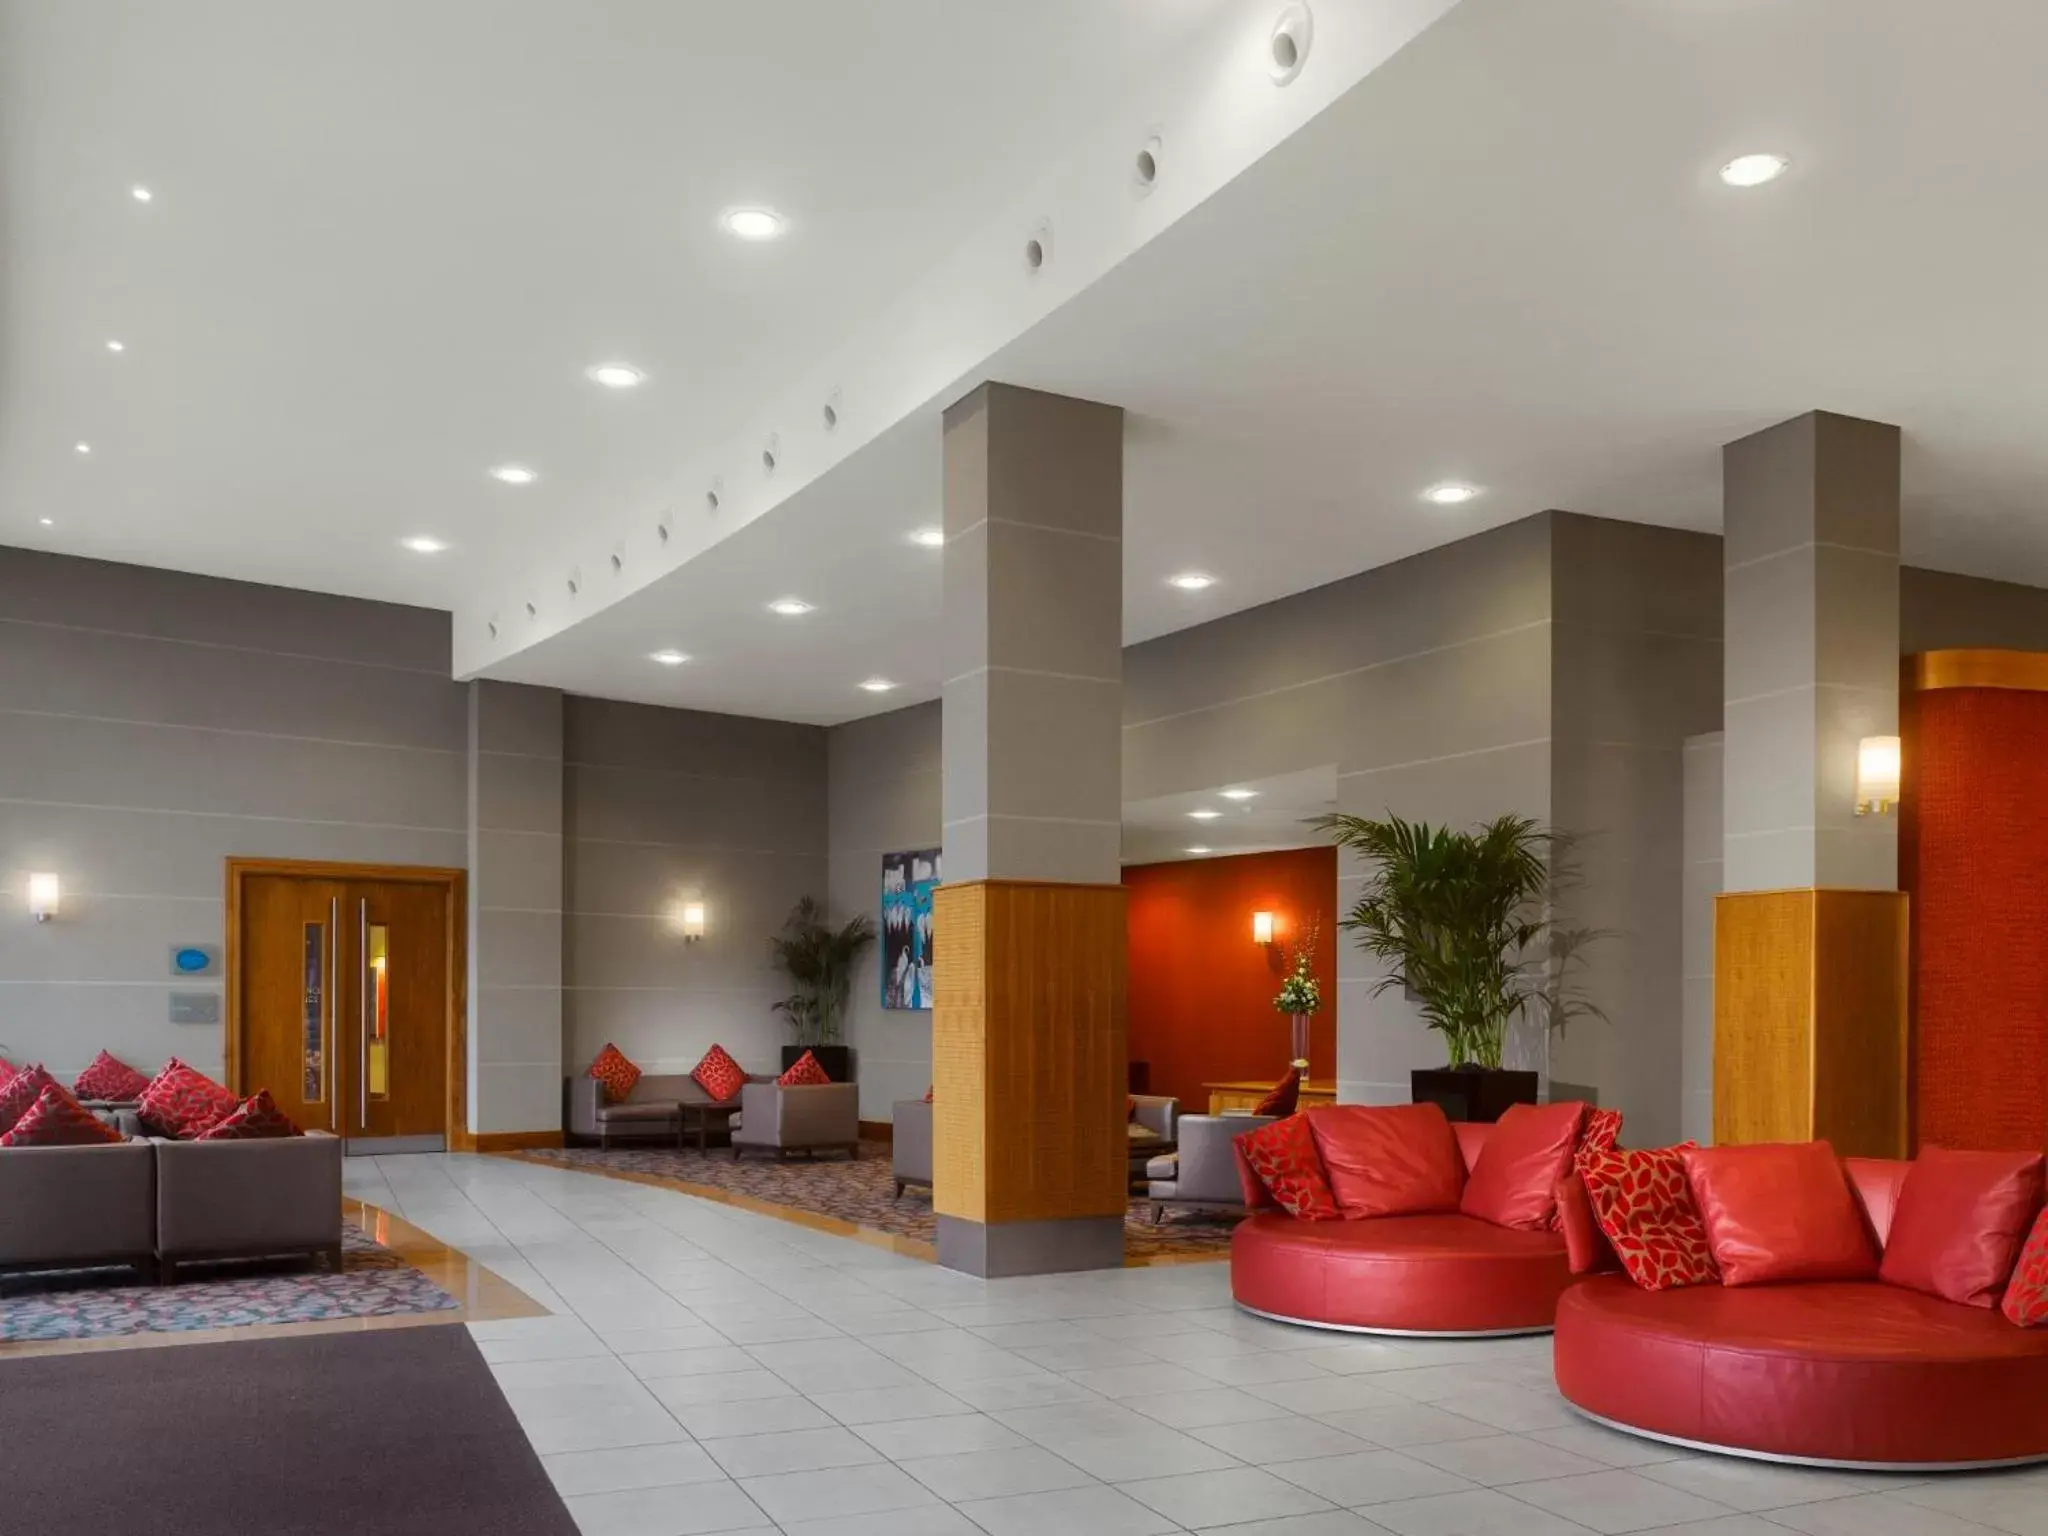 Lobby or reception, Lobby/Reception in Radisson Blu Hotel, Durham